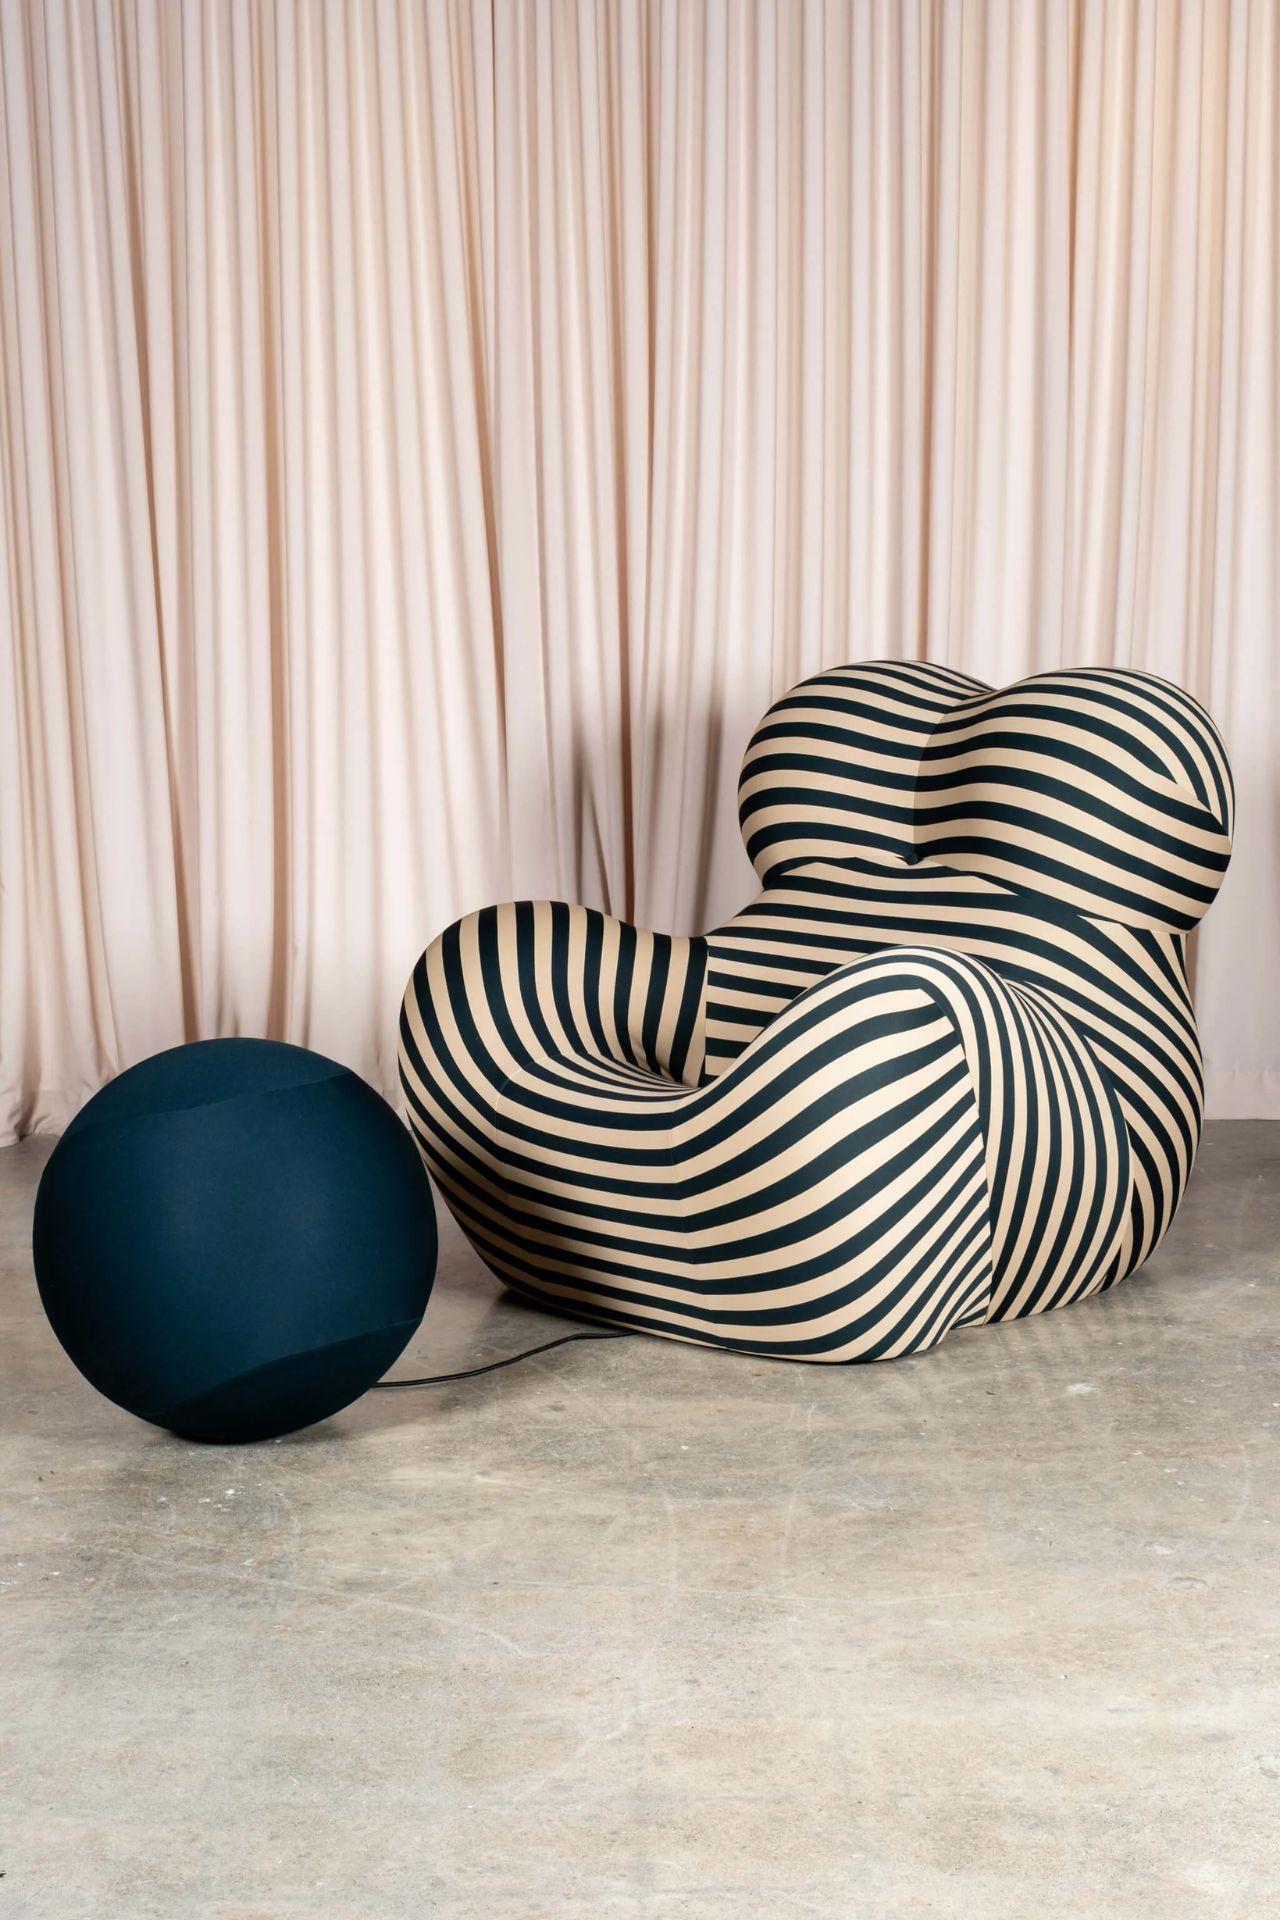 B&B Italia 'La Mamma' Up 5/6 Lounge Chair&Ottoman, Green Stripe by Gaetano Pesce For Sale 4